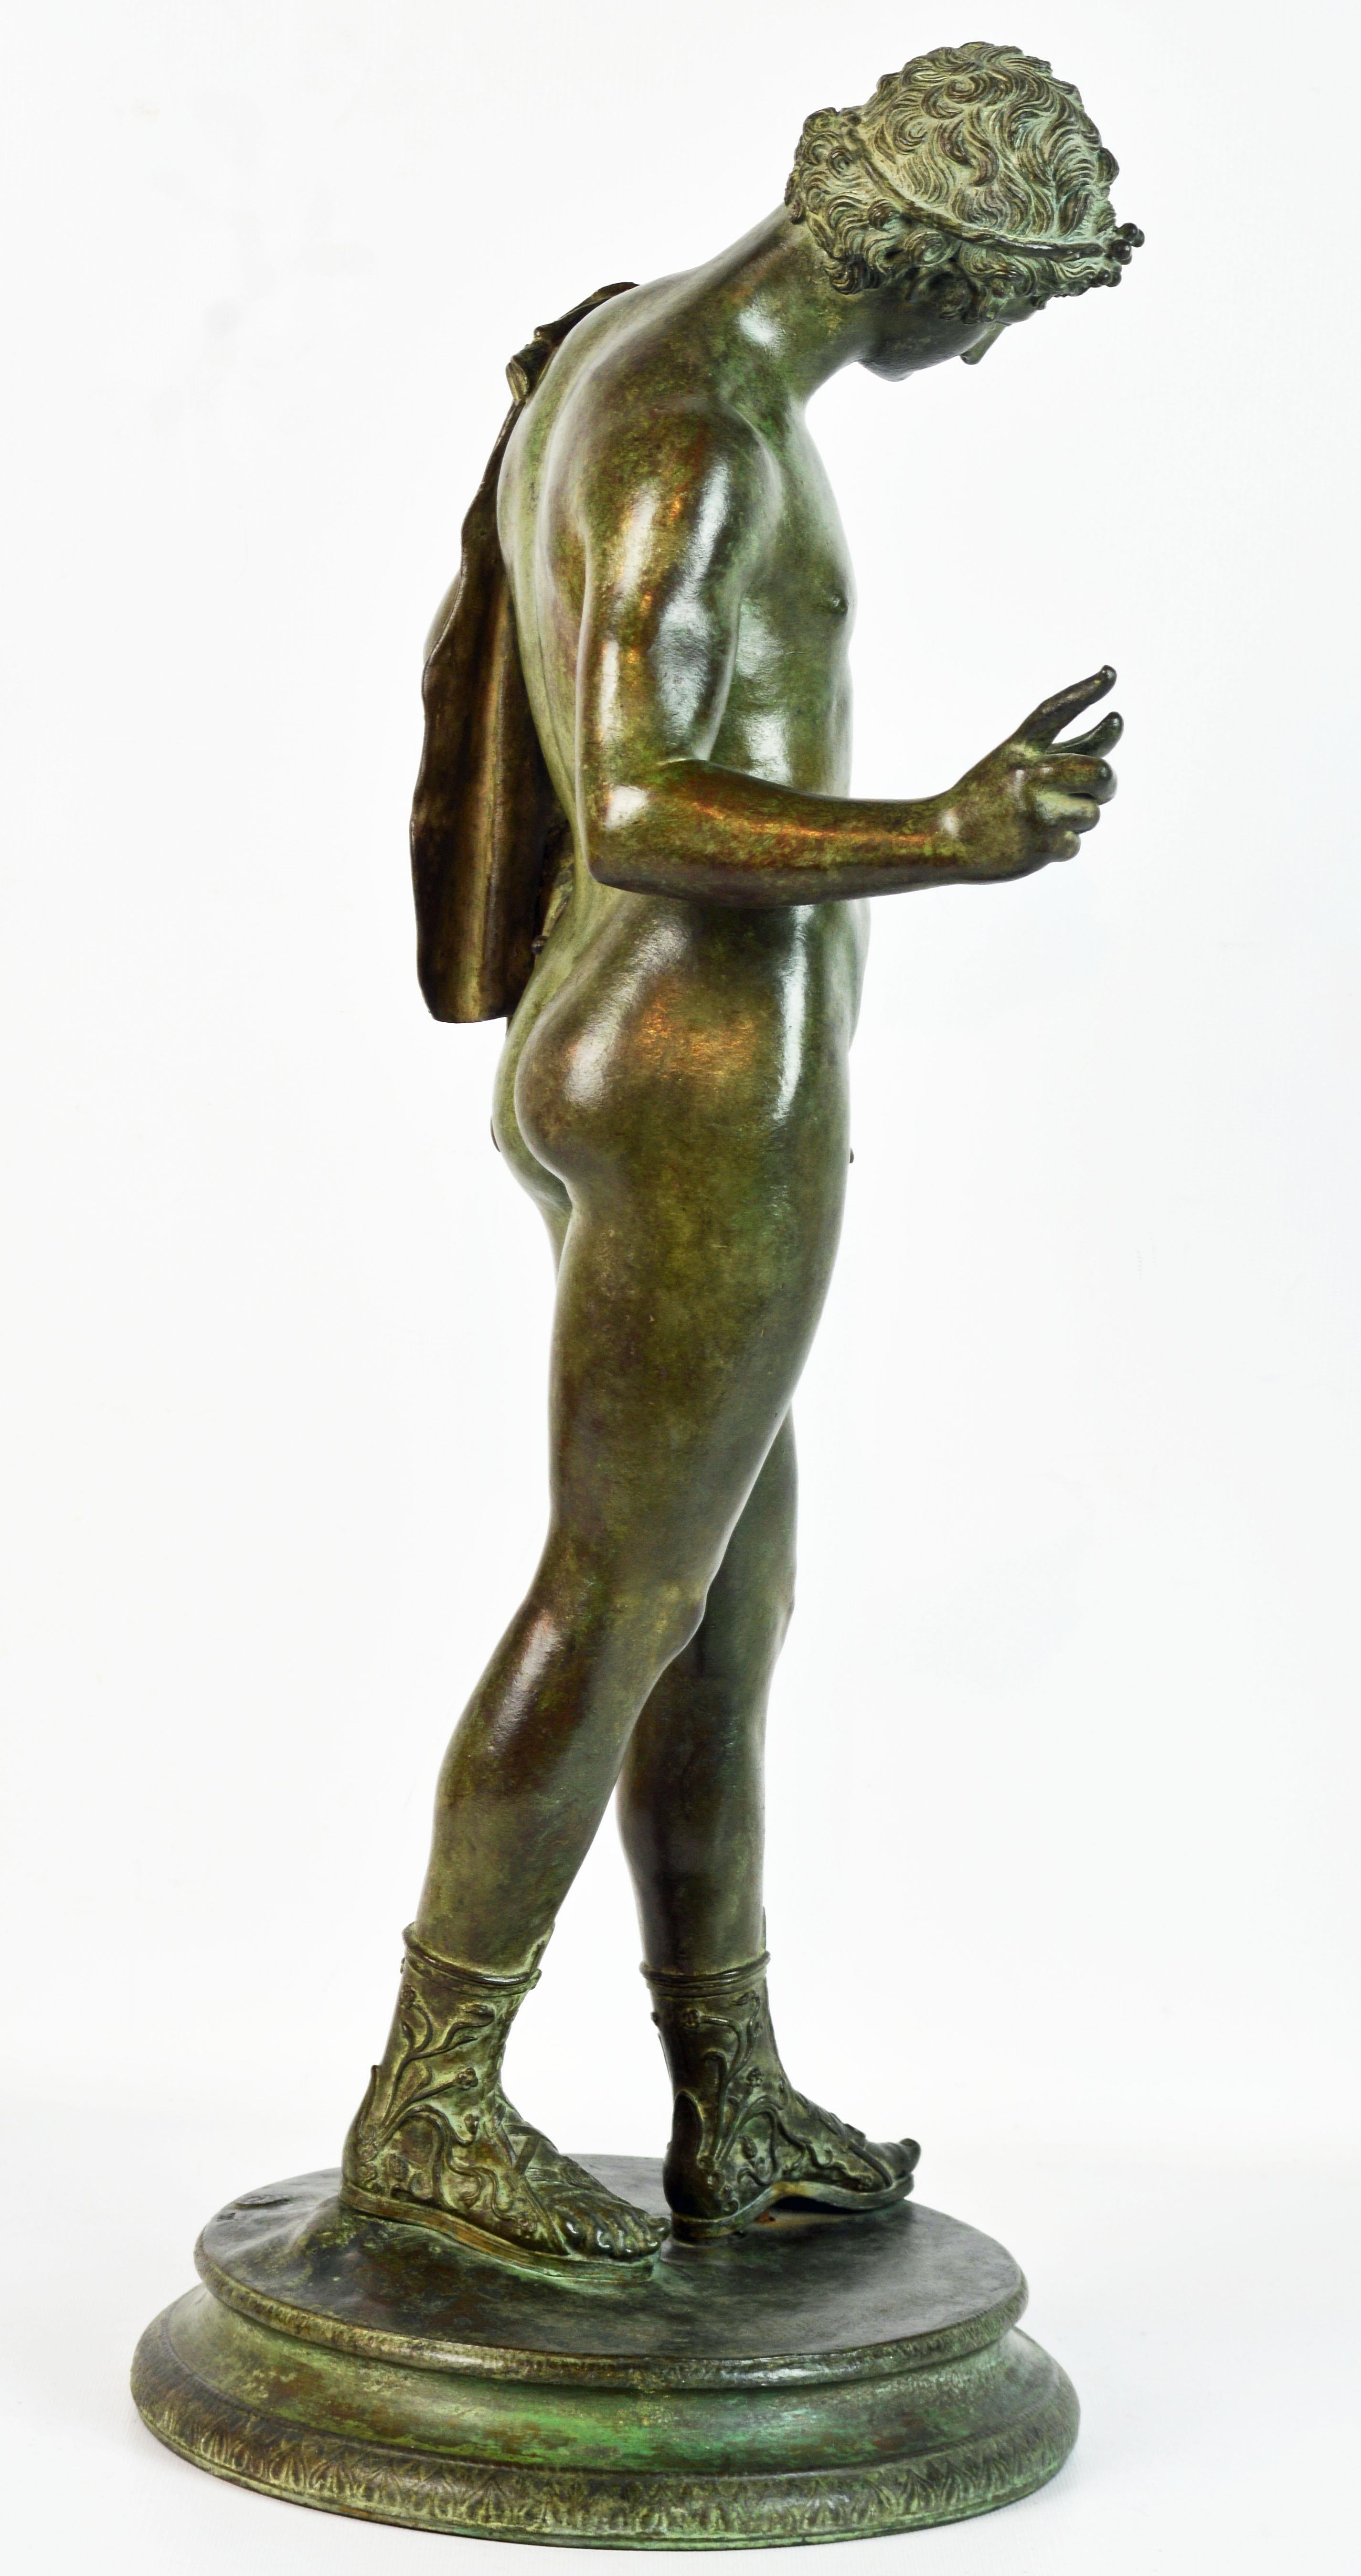 italien figure en bronze du XIXe siècle:: Narcisse d'après la fonderie V. Gemito Antique Naples